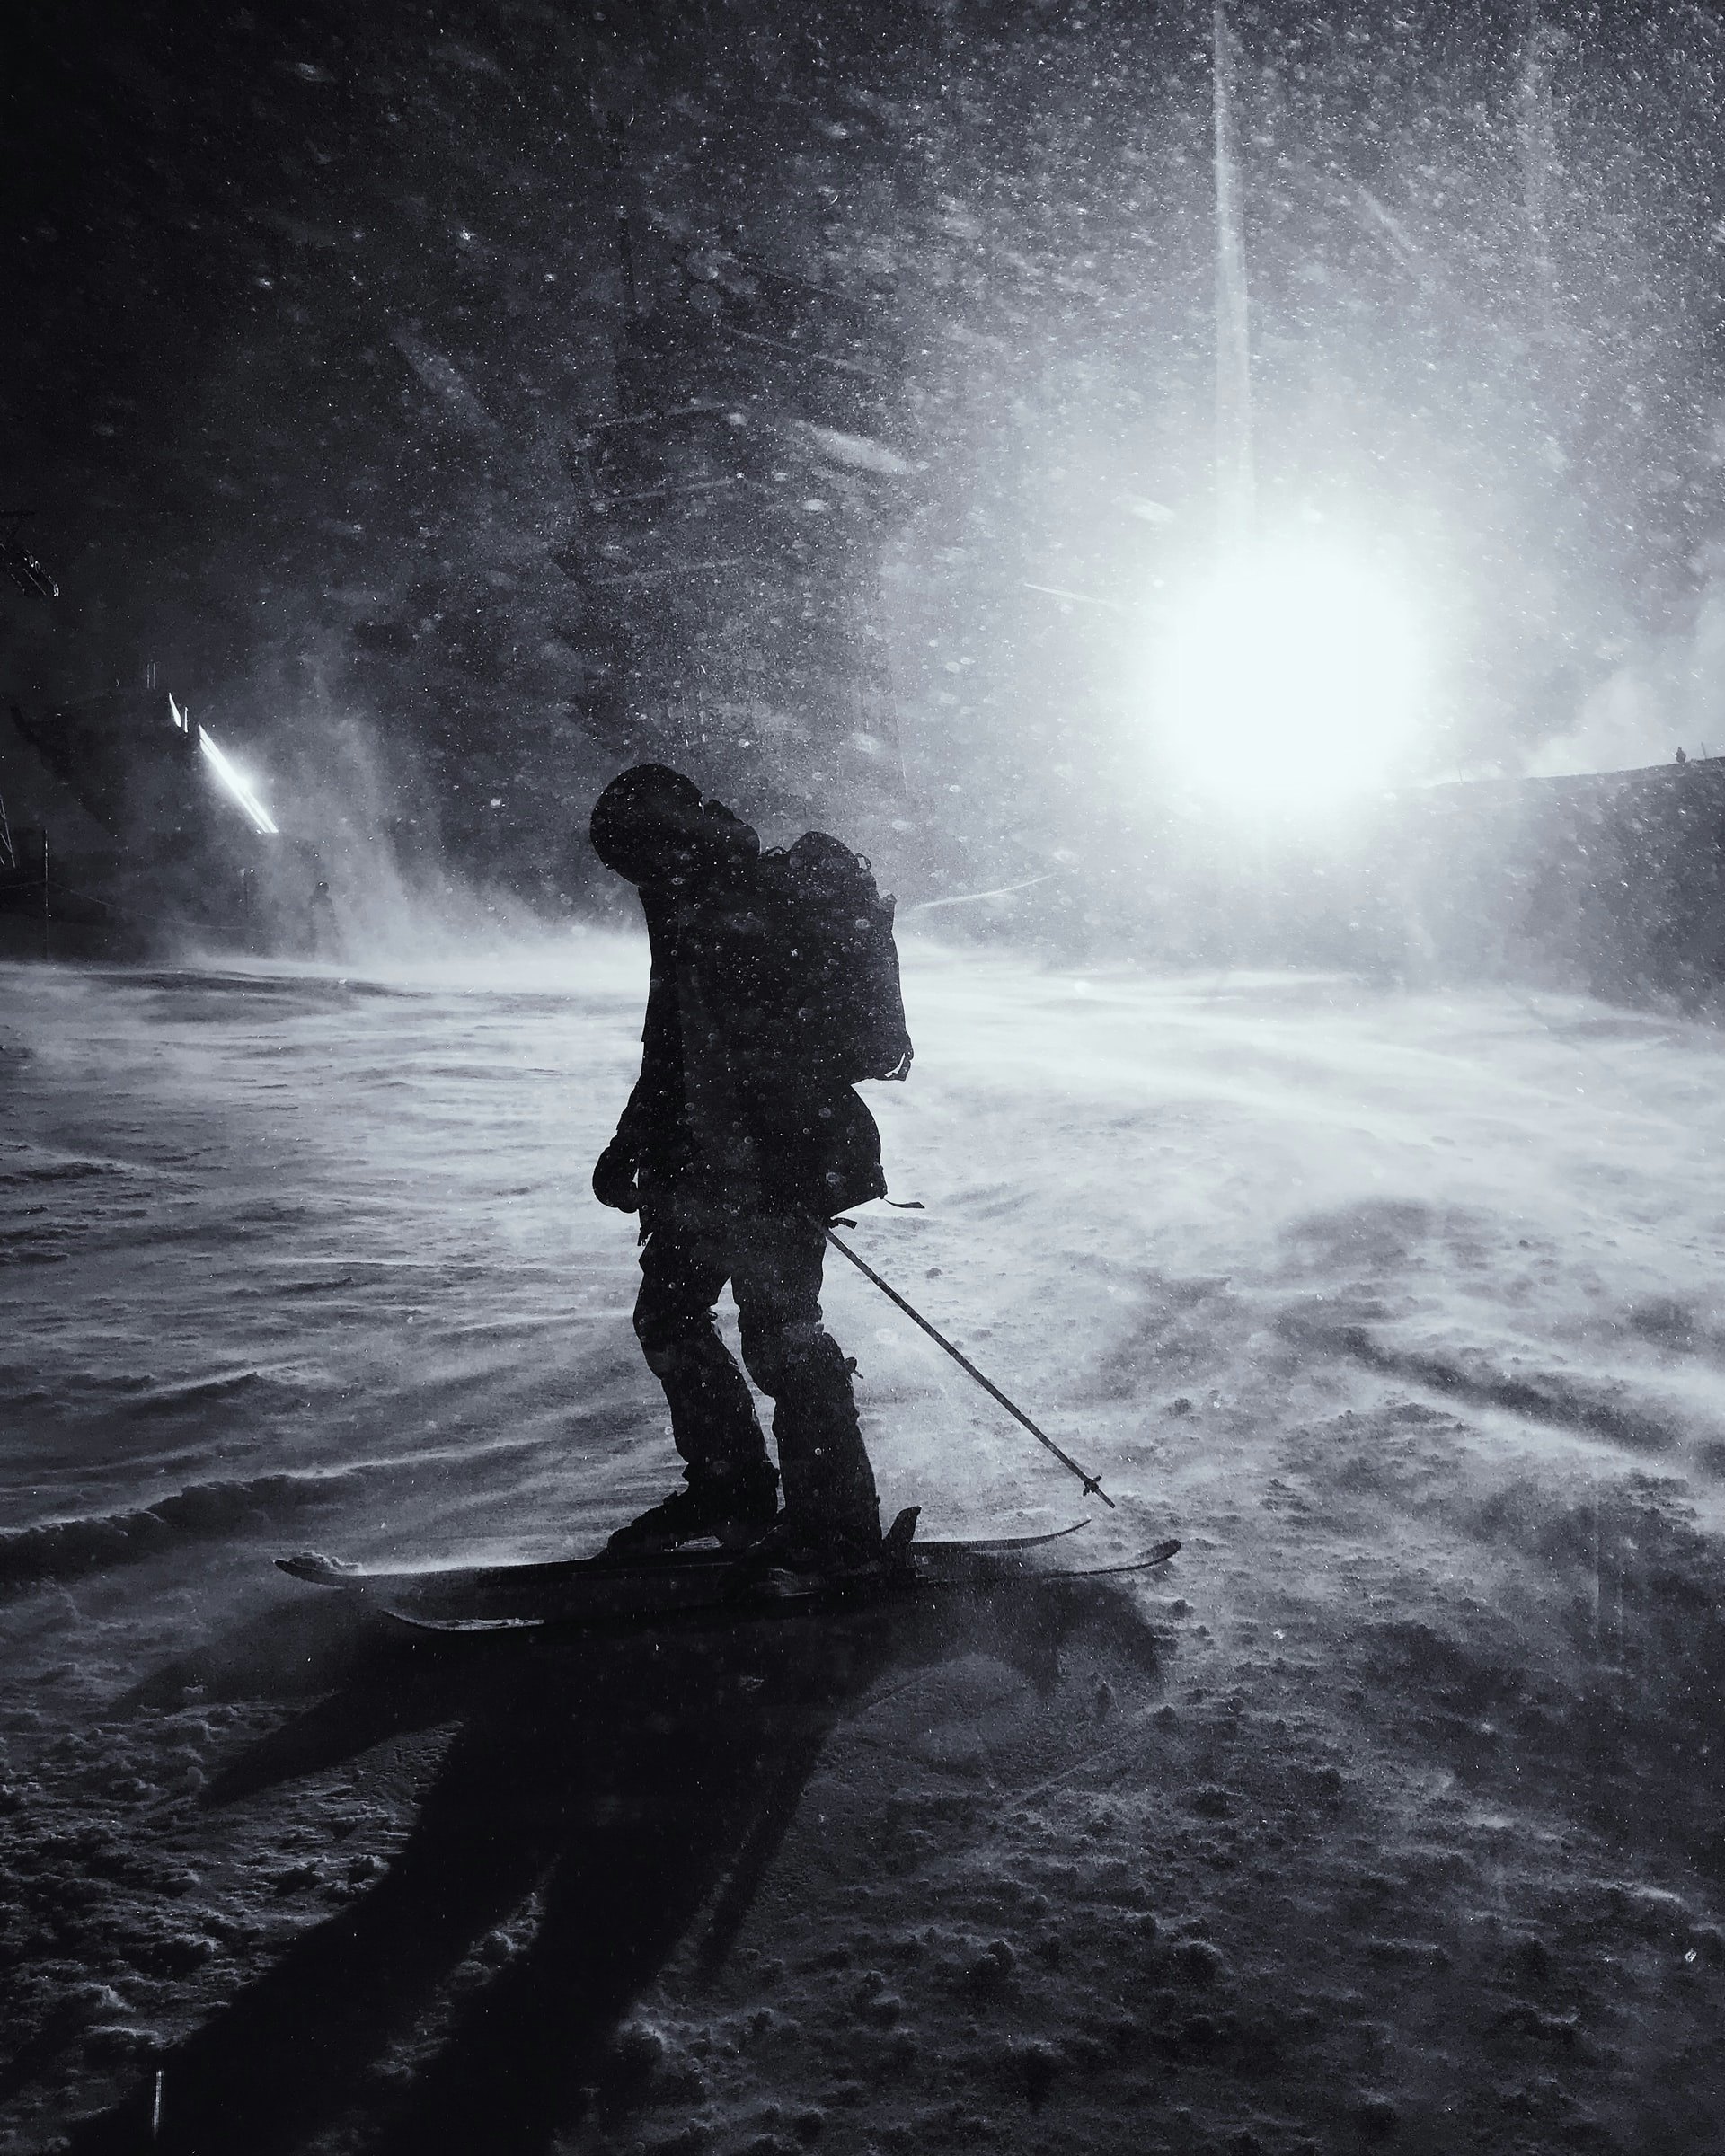 ski touring at night